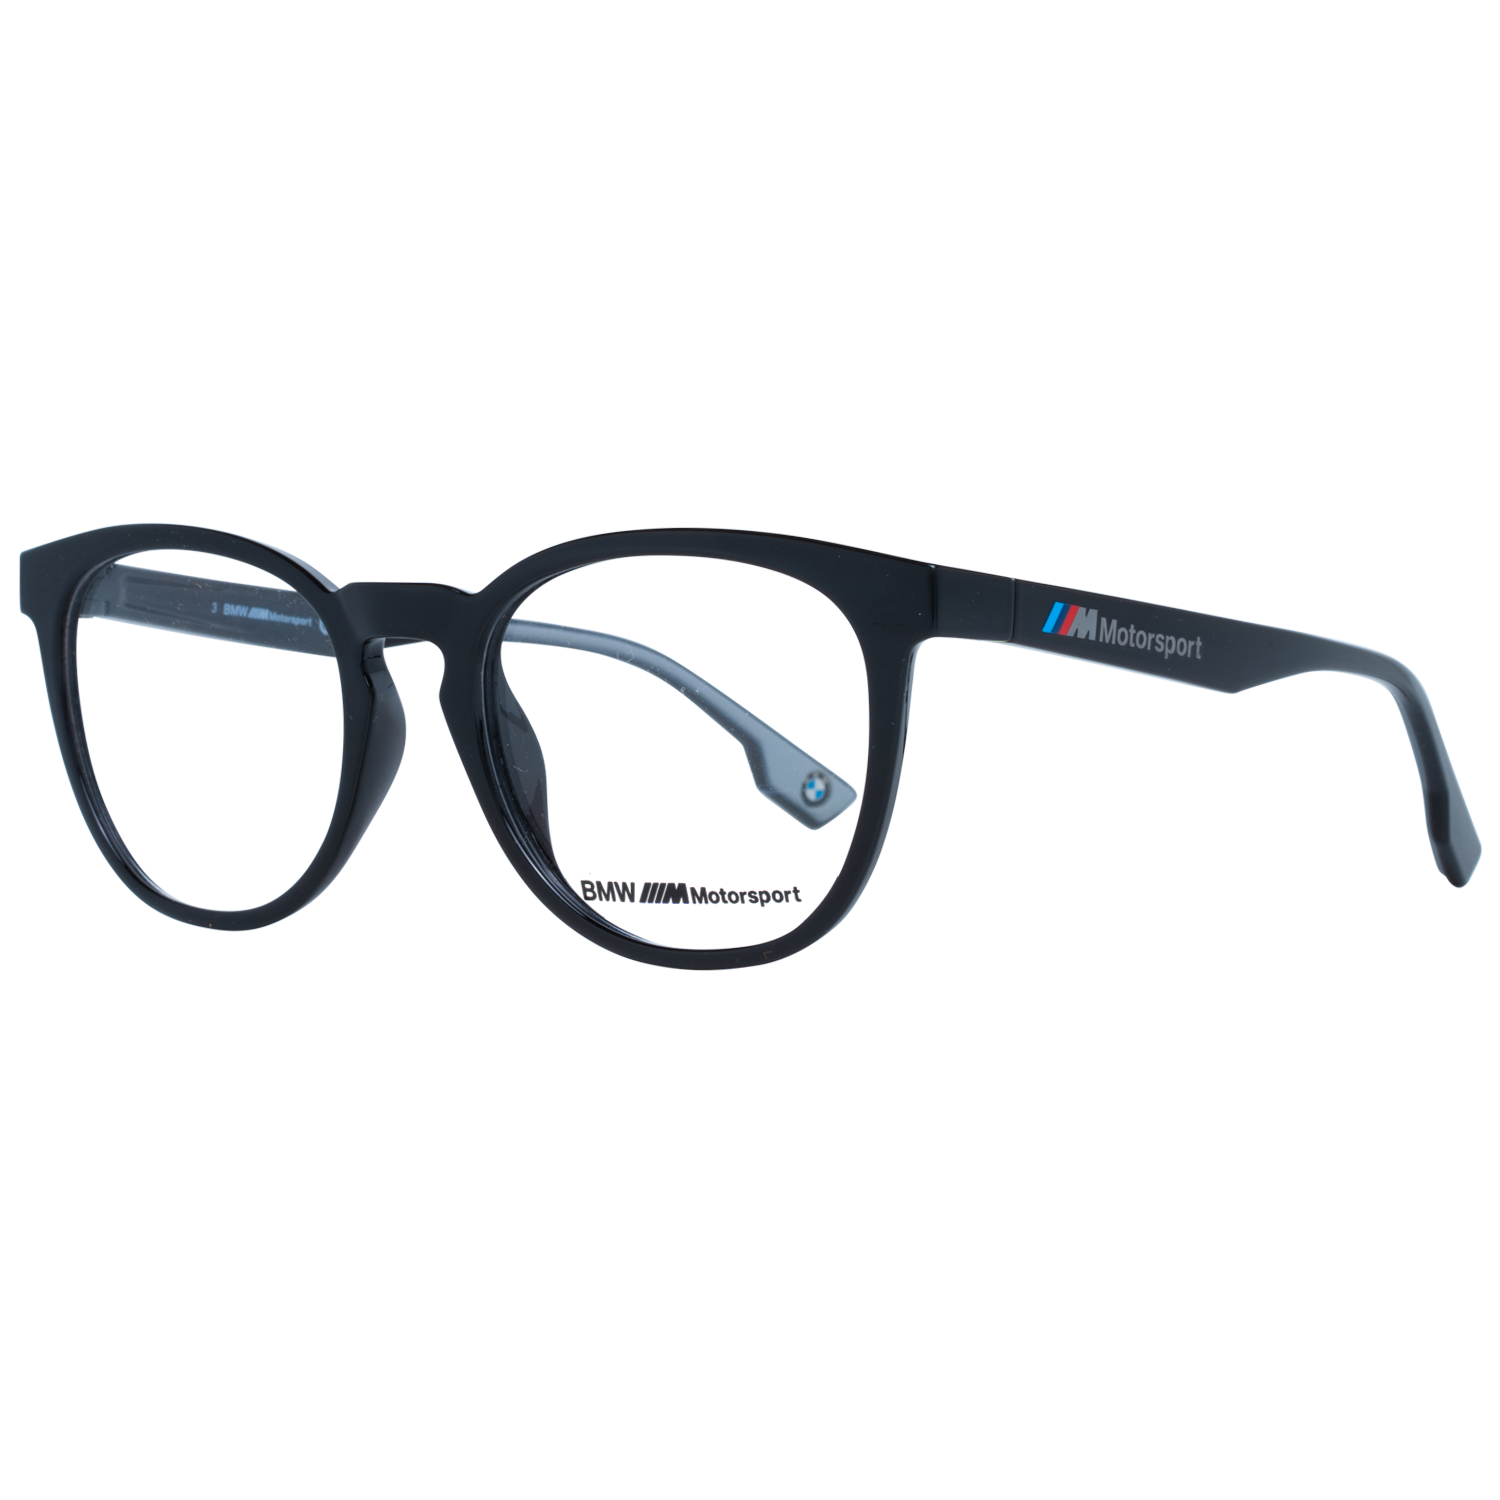 BMW Motorsport Frames BMW Motorsport Glasses Frames Eyeglasses BS5004-H 001 53mm Eyeglasses Eyewear UK USA Australia 